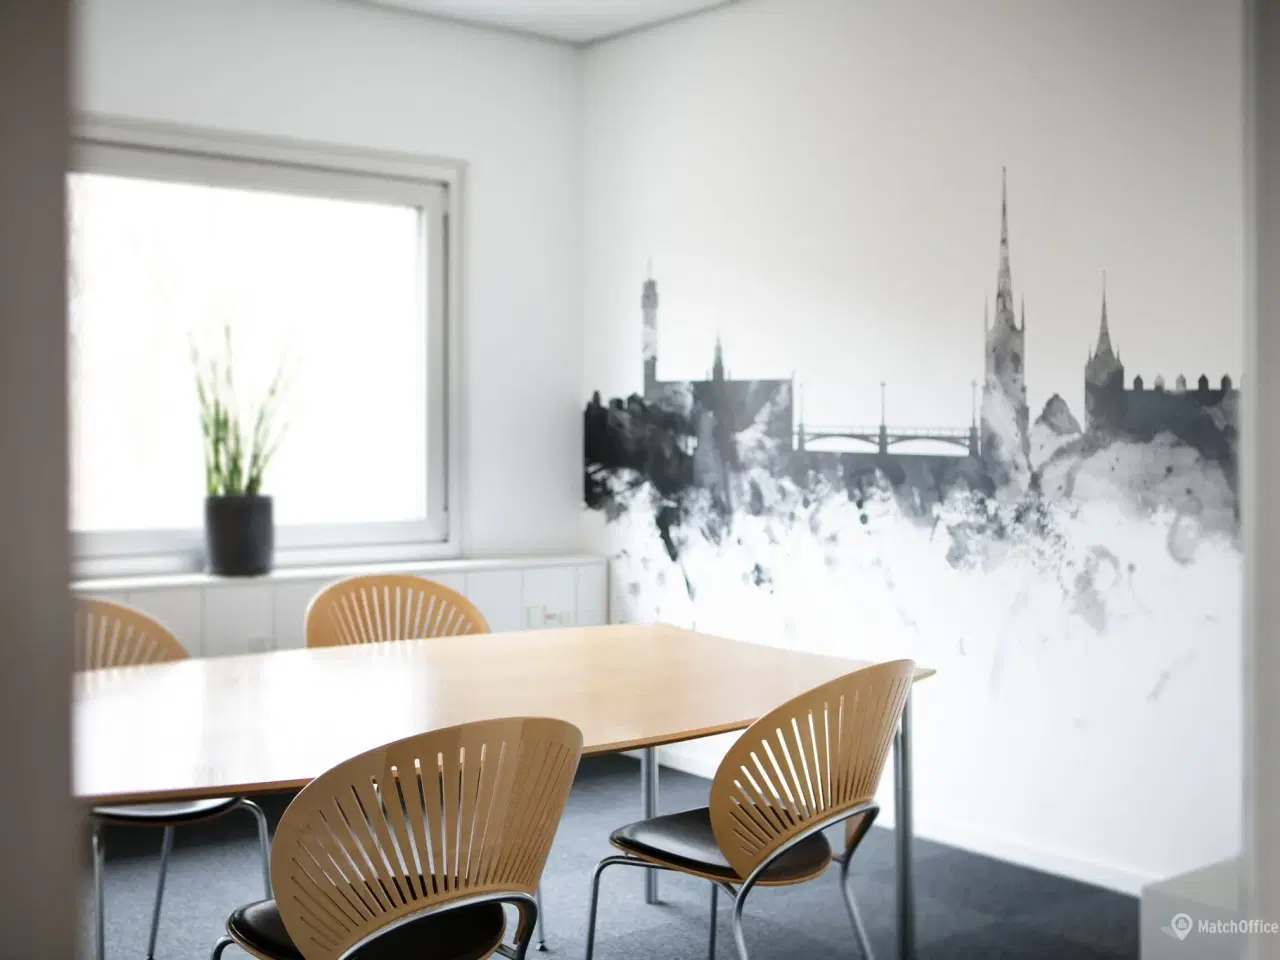 Billede 17 - Billigt kontor i Danmarks svar på Silicon Valley?